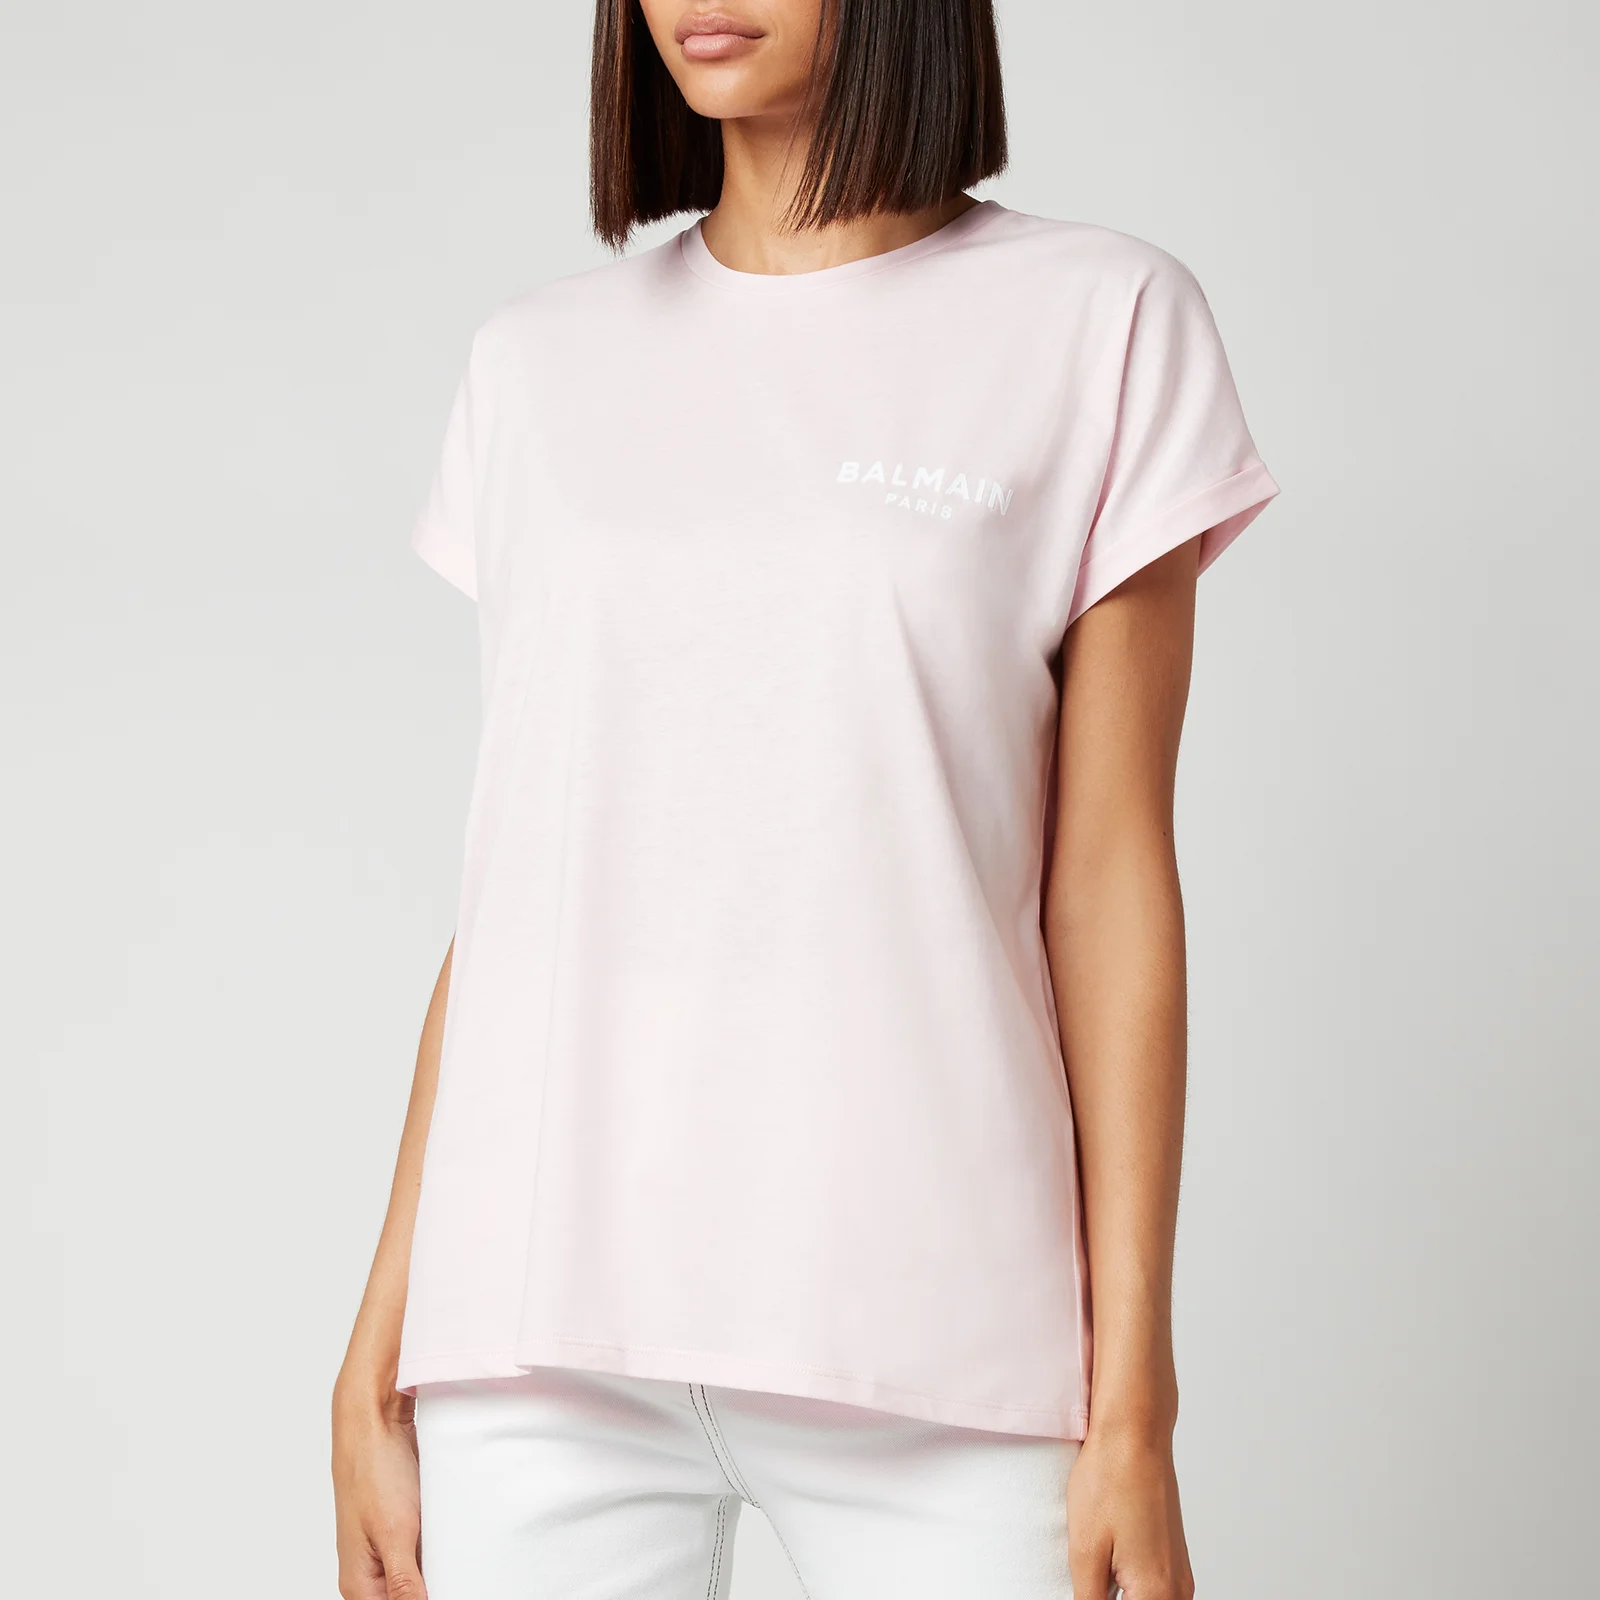 Balmain Women's Flocked Logo T-Shirt - Rose Pale/Blanc Image 1